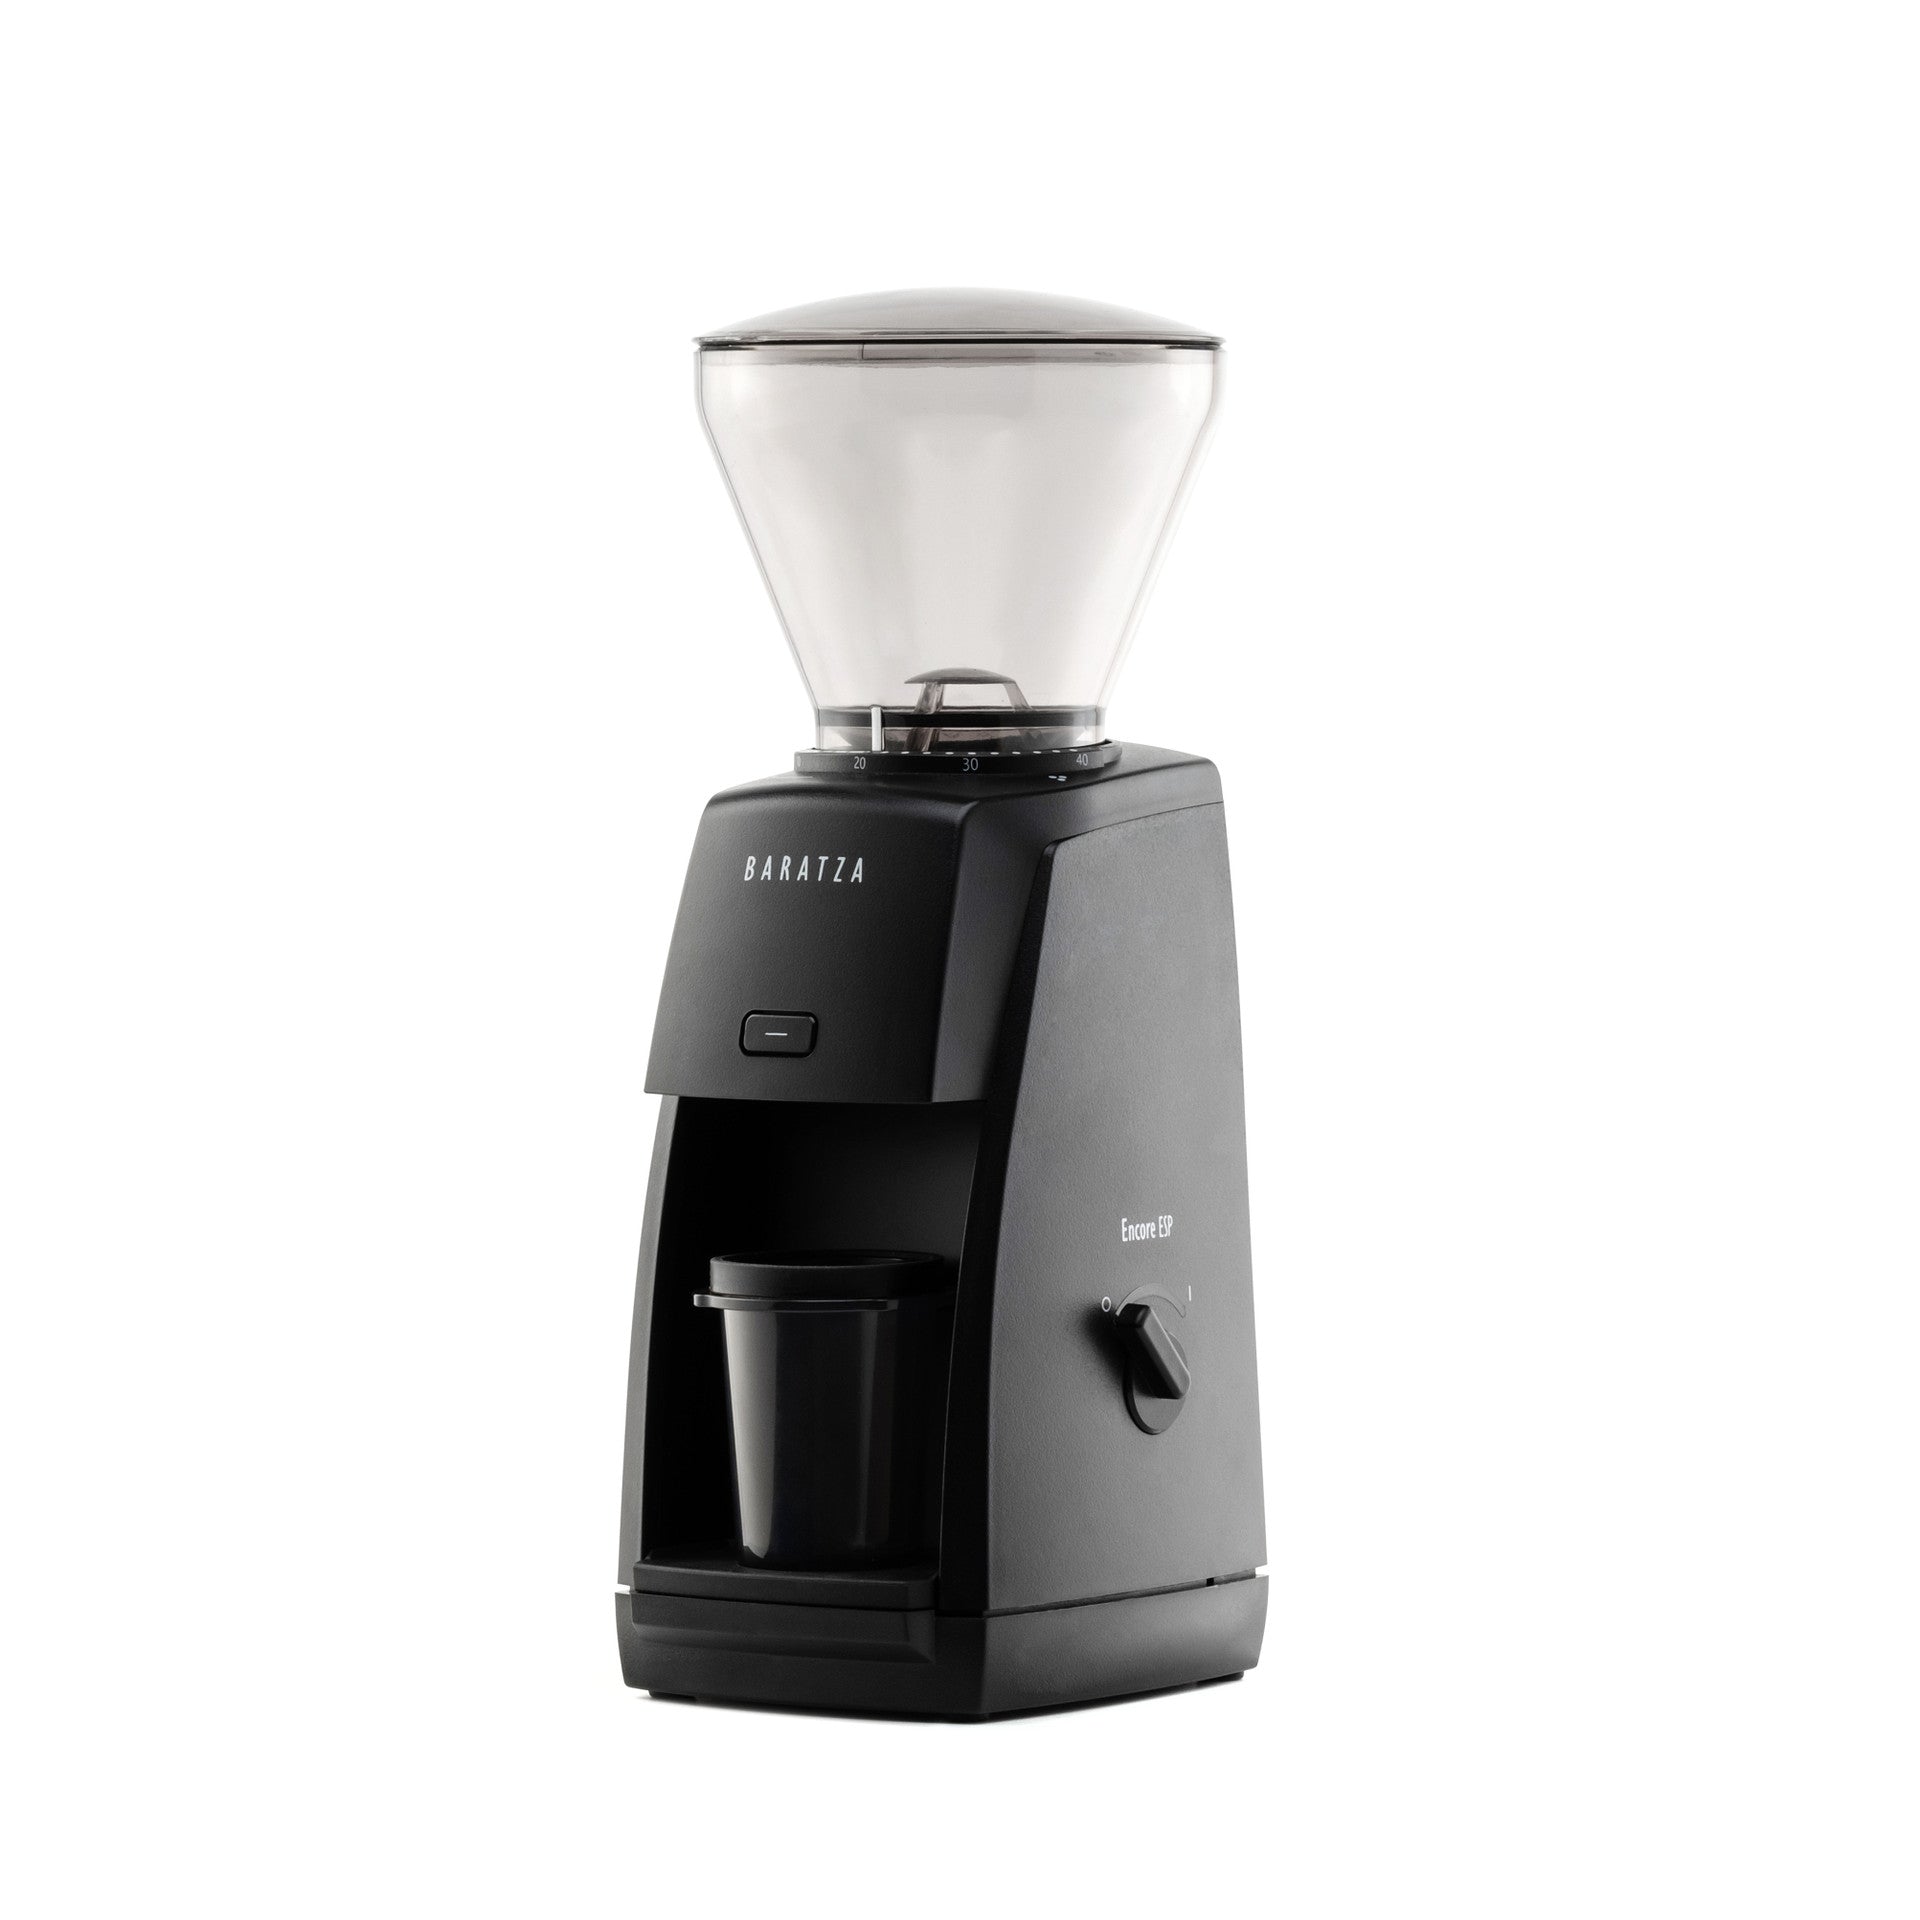 http://www.rustydogcoffee.com/cdn/shop/products/baratza-encore-esp-espresso-grinder-madison-wisconsin-black.jpg?v=1679109629